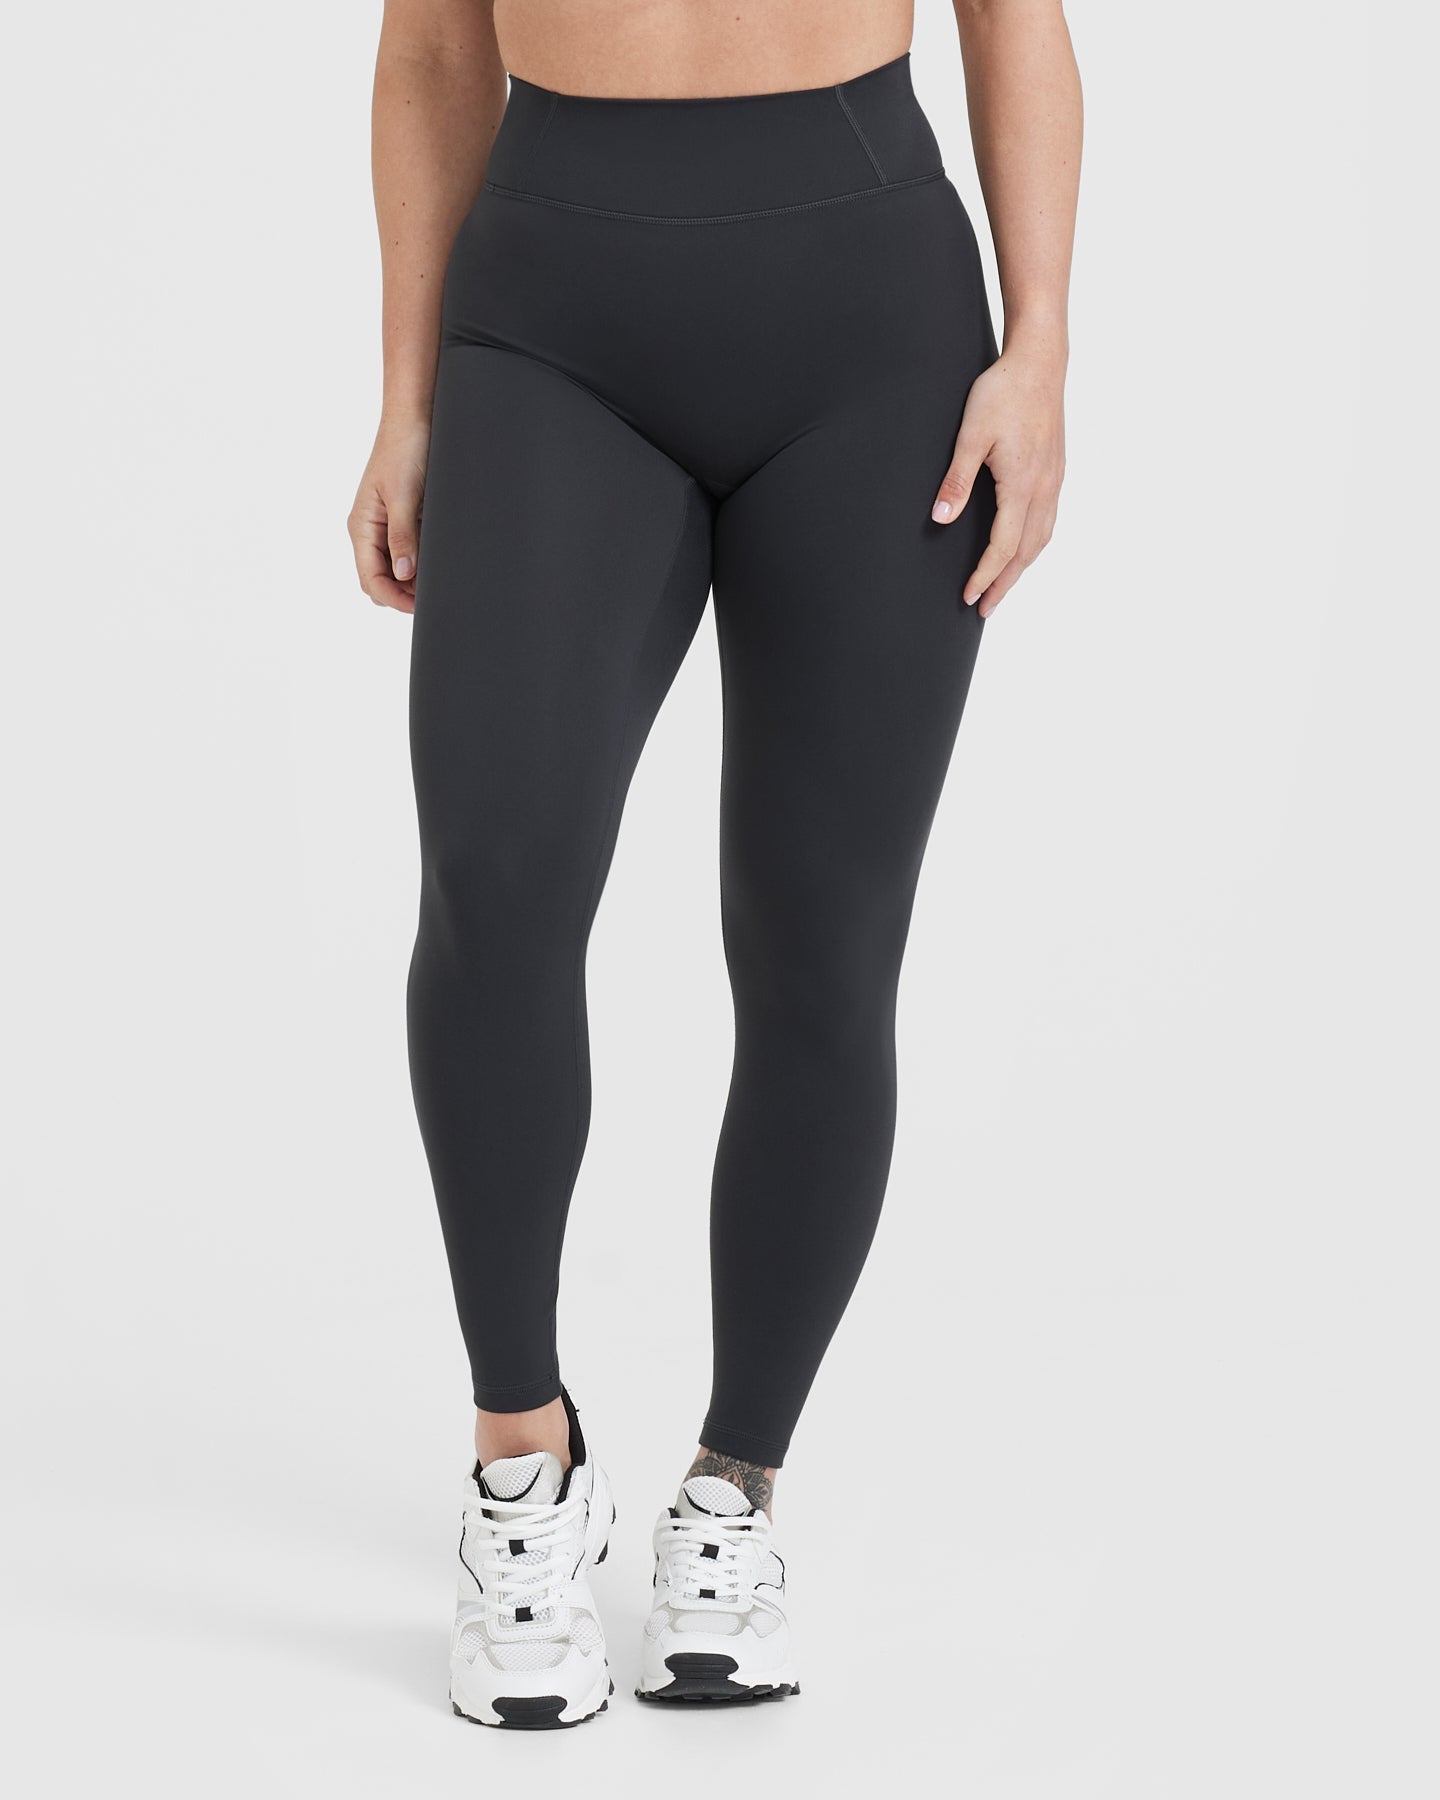 High waist squat proof leggings (charcoal grey)